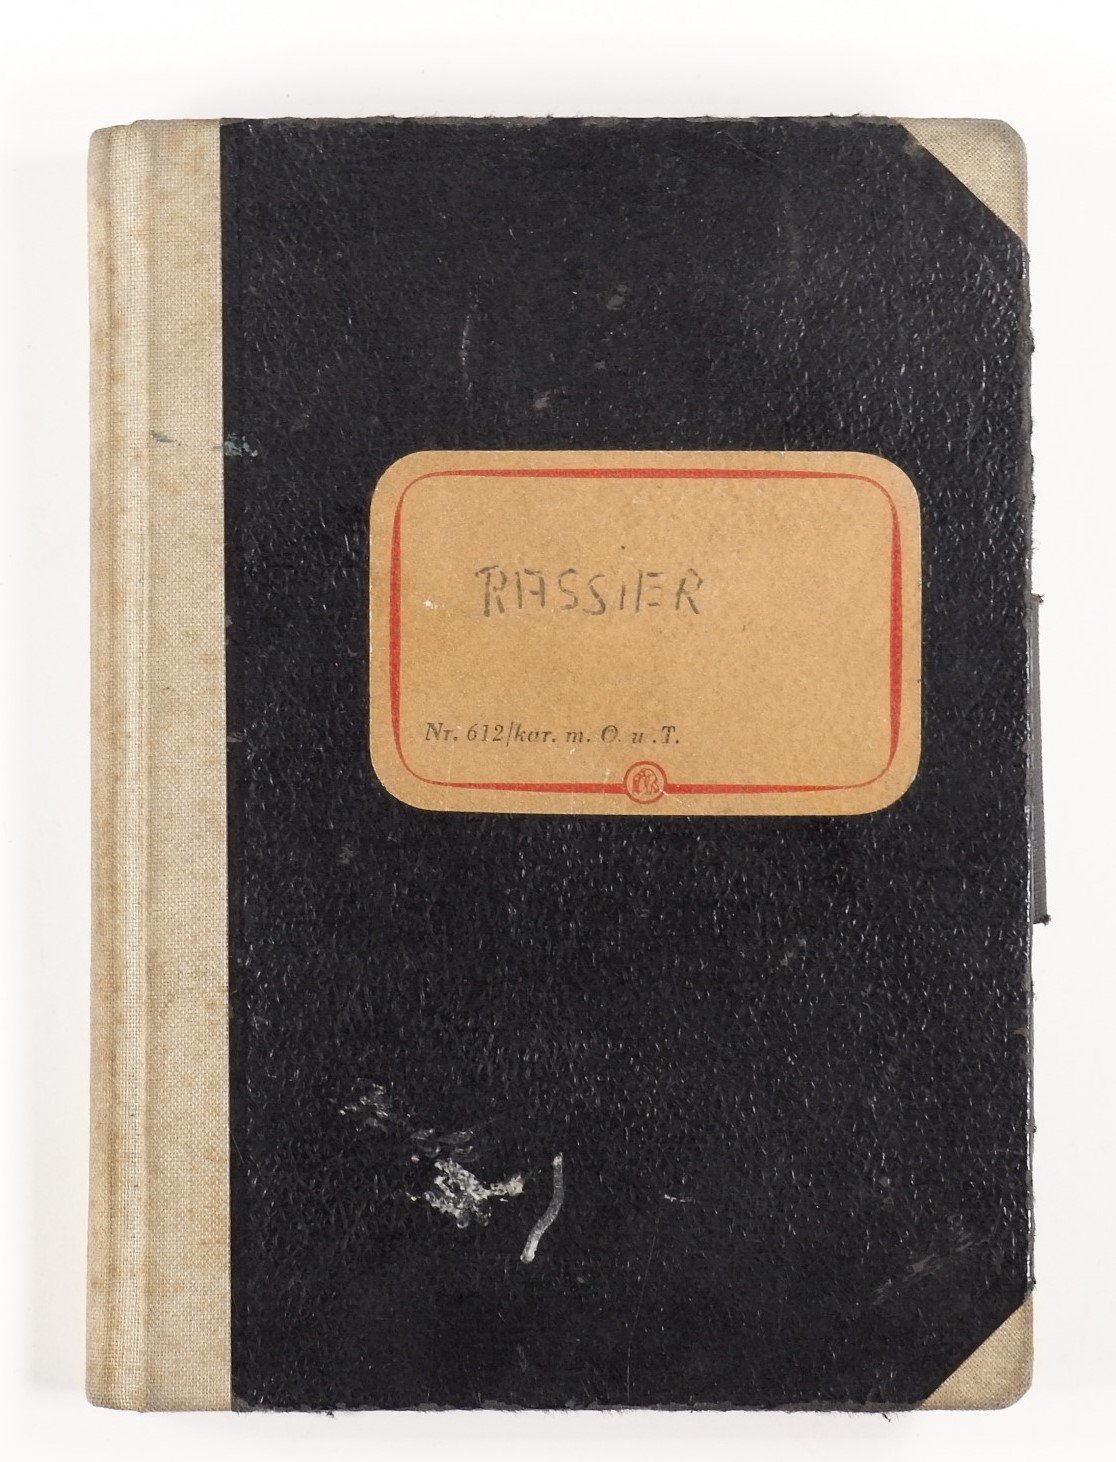 Notizbuch der Fa. Rassier - Cover (Volkskunde- und Freilichtmuseum Roscheider Hof CC0)